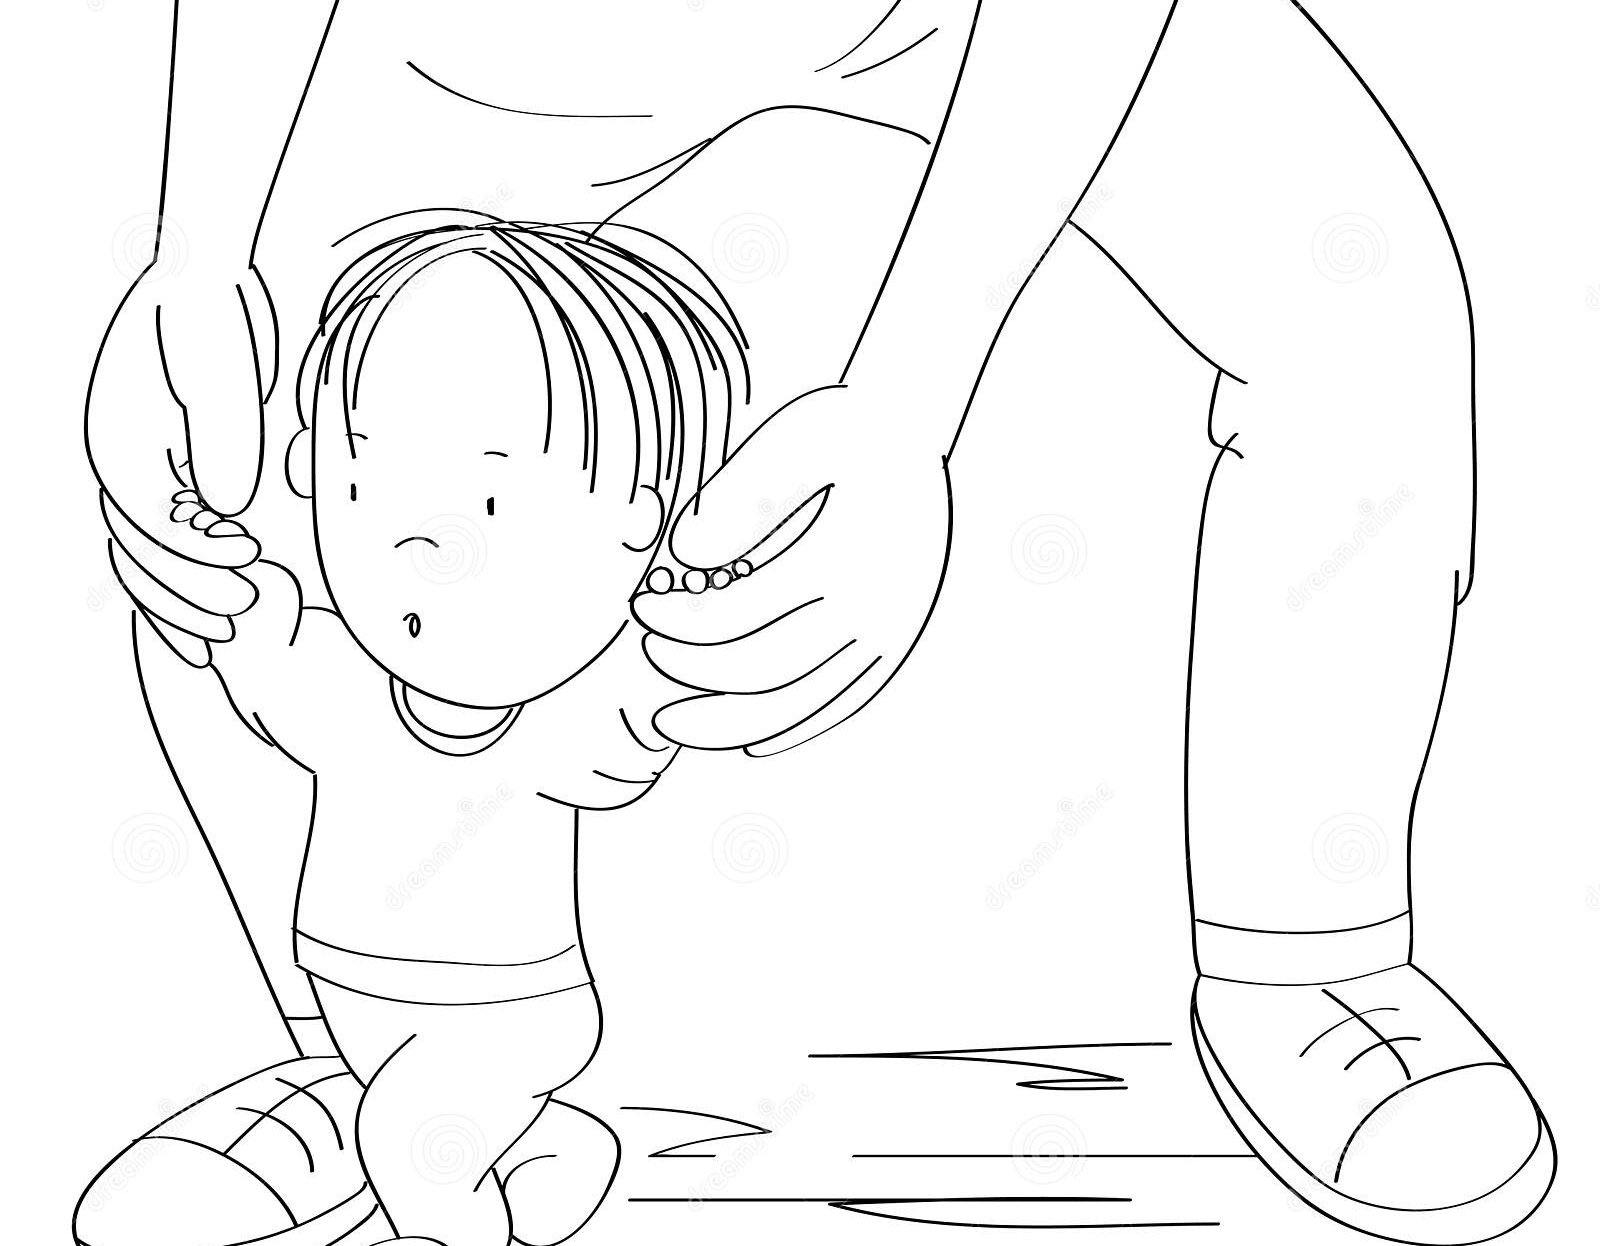 jongetje-leert-lopen-jonge-vader-helpt-zijn-zoon-met-de-kleuter-die-eerste-stappen-zet-en-maakt-van-originele-hand-tekenfilm-221058471